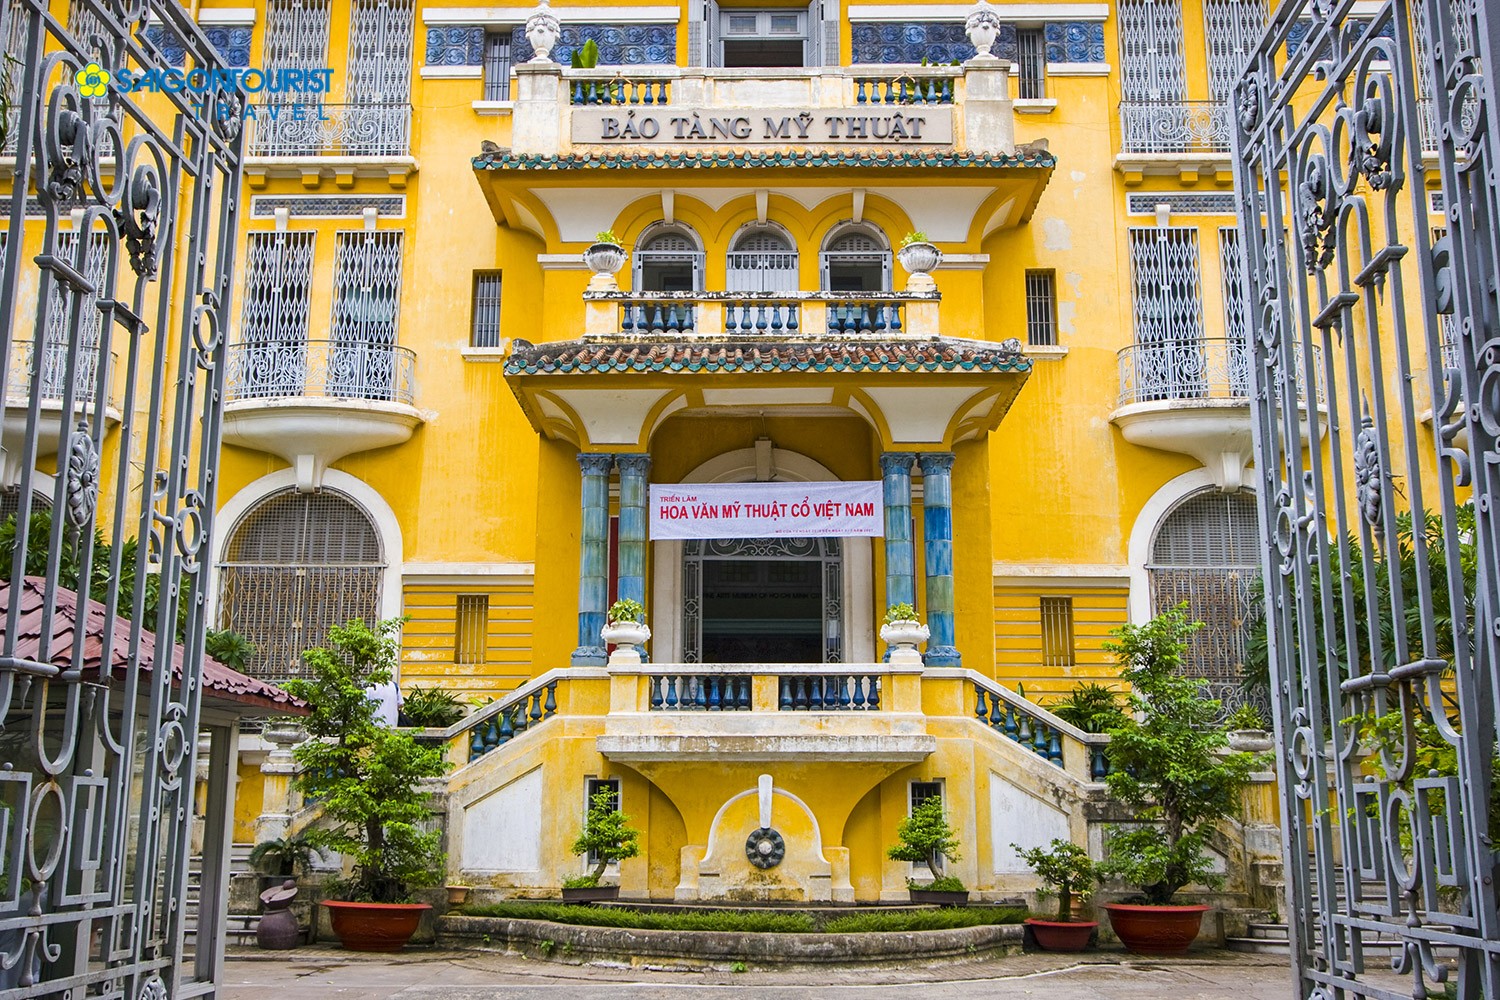 Những bảo tàng ở Sài Gòn dành cho người mê lịch sử (Phần 2)